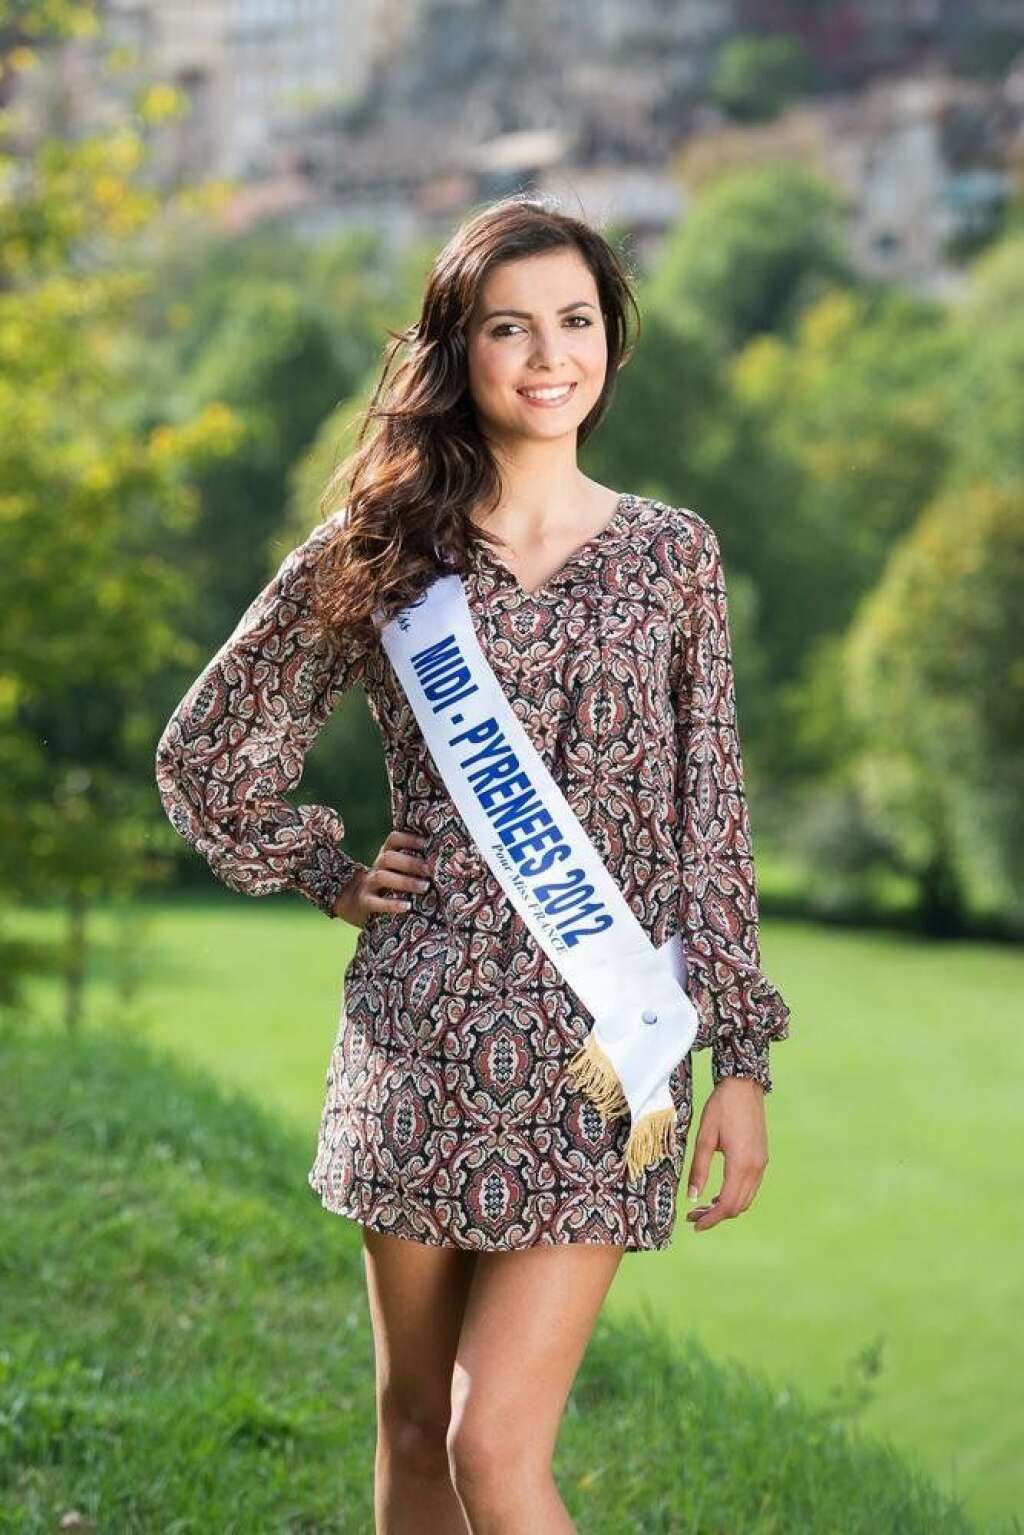 Miss Midi-Pyrénées - Célia Guermoudj    22 ans - 1,72 m    Etudiante en BTS tourisme